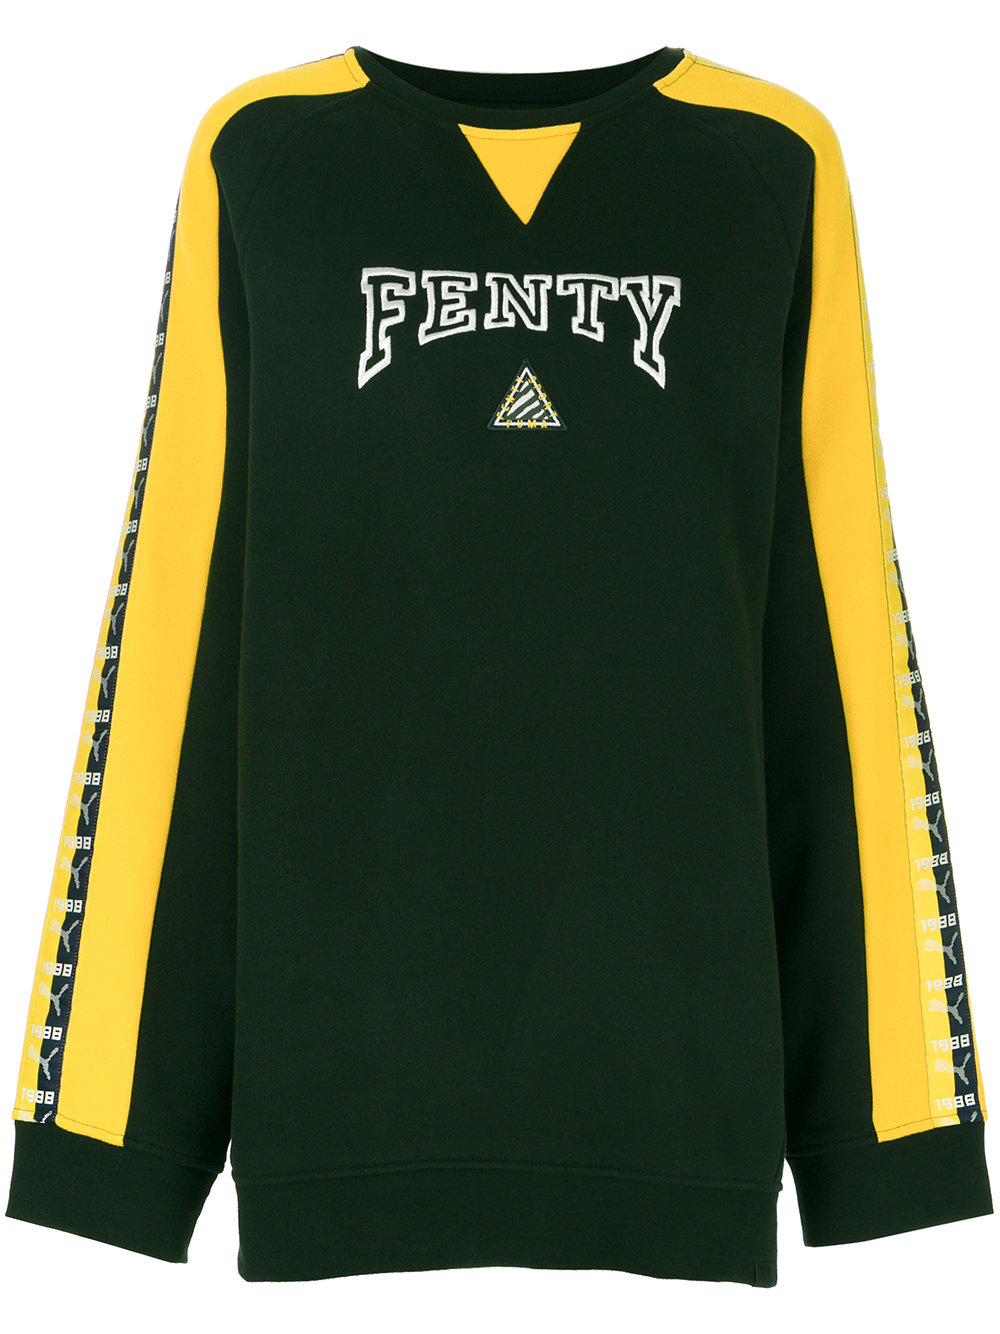 Berg kleding op rand lunch fenty-puma-logo-sweatshirt